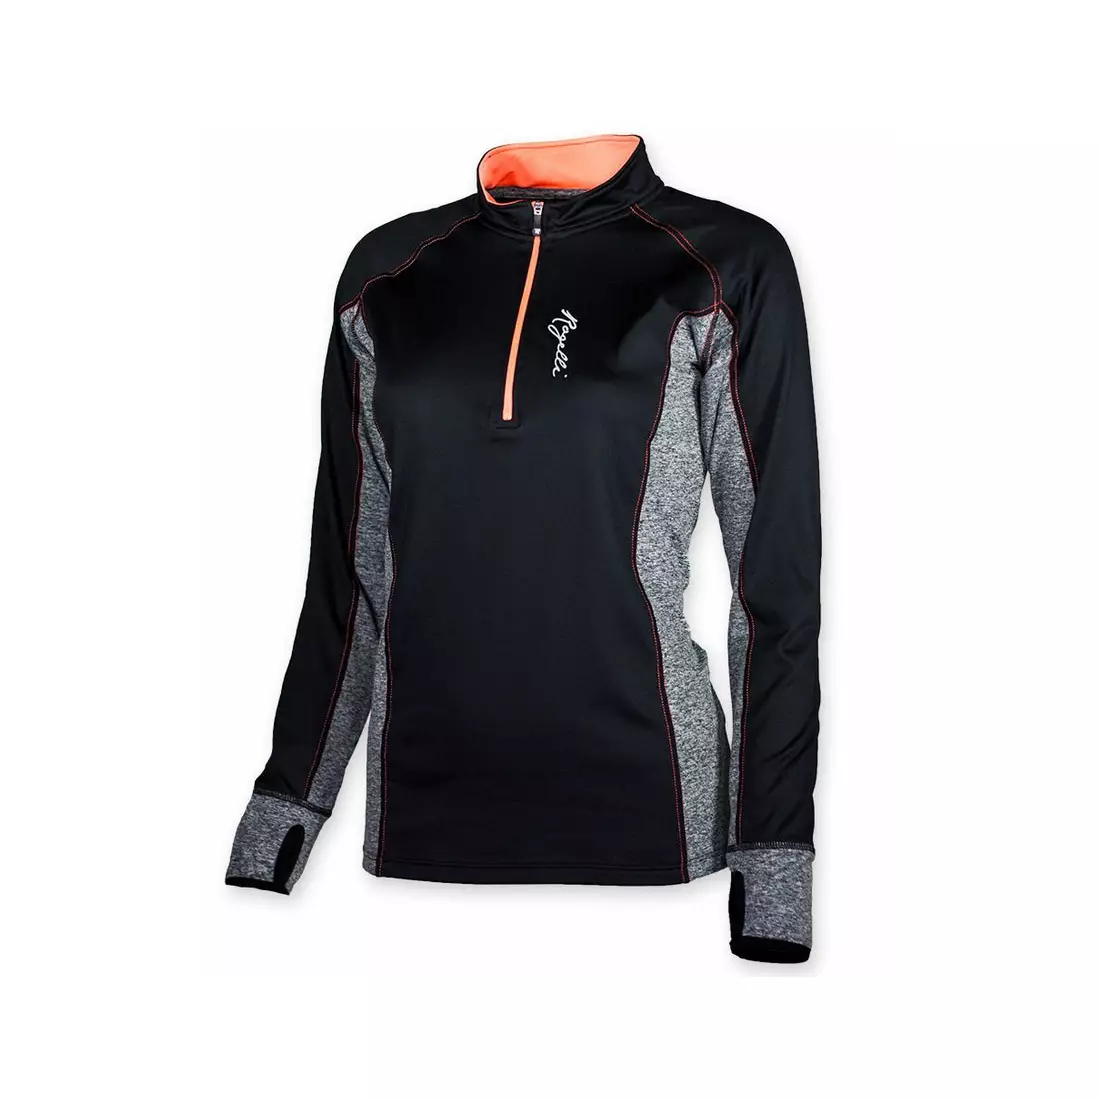 ROGELLI MAURA – isoliertes Laufsweatshirt für Damen 840.660, Farbe: Schwarz und Rosa (Koralle)